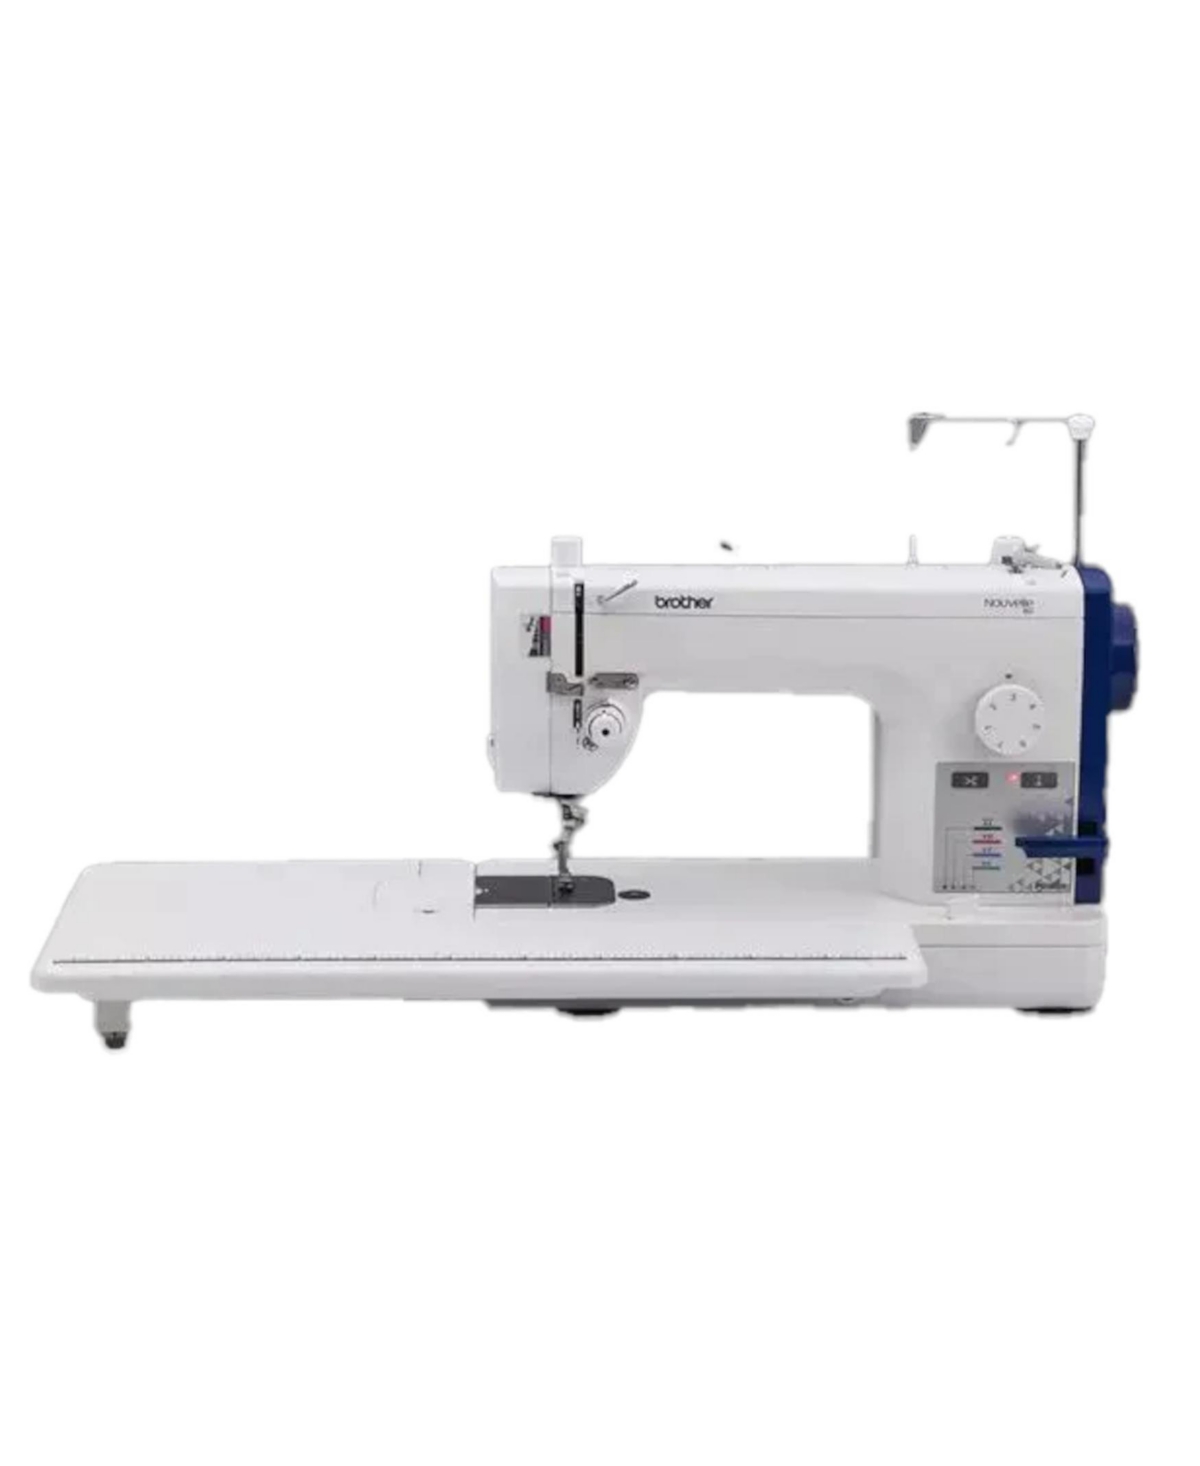 PQ1600s Straight Stitch Sewing and Quilting Machine - White